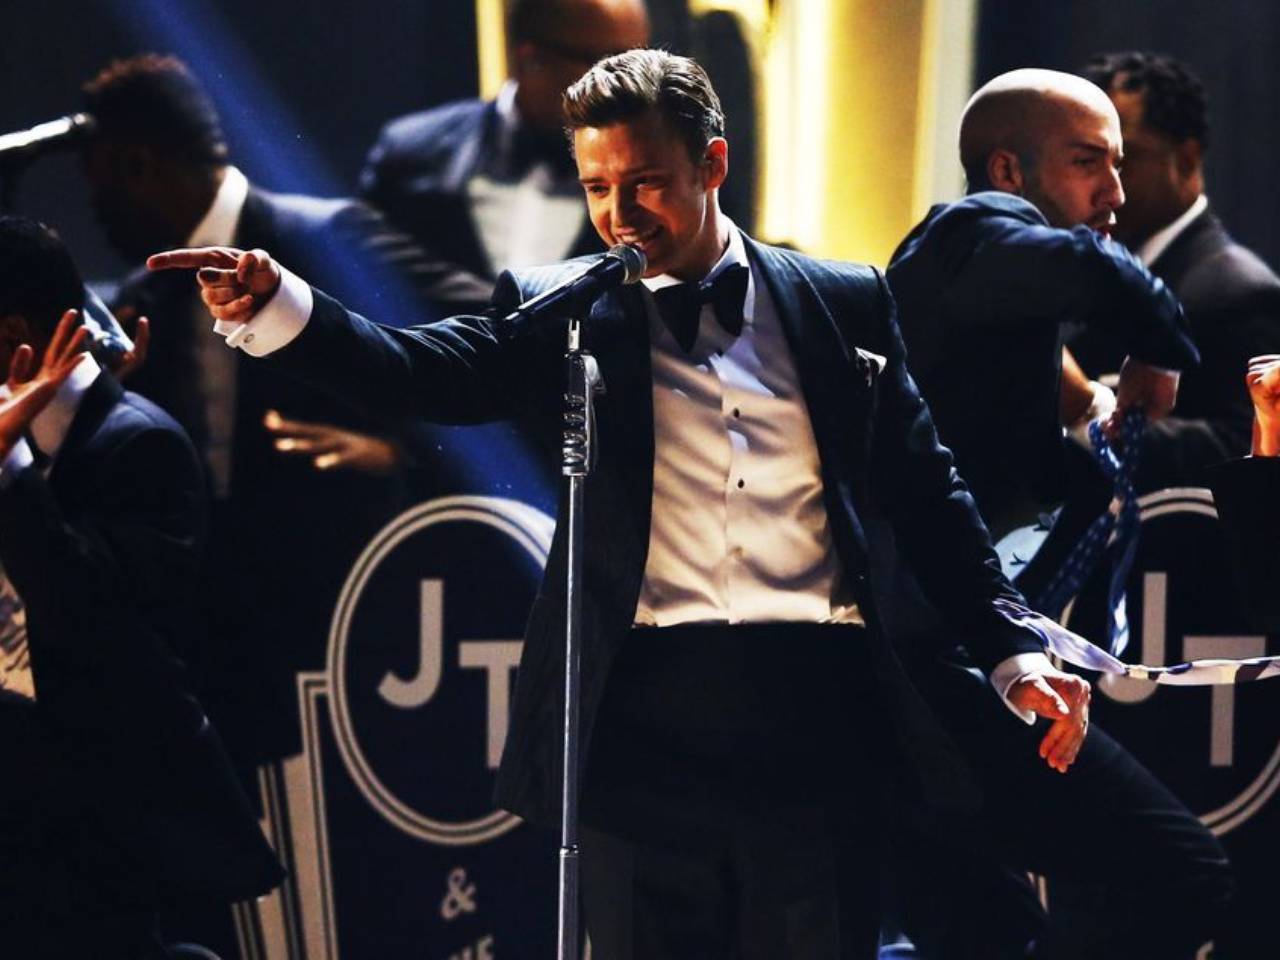 Justin Timberlake - Grammys 2013 Red Carpet: Photo 2809089